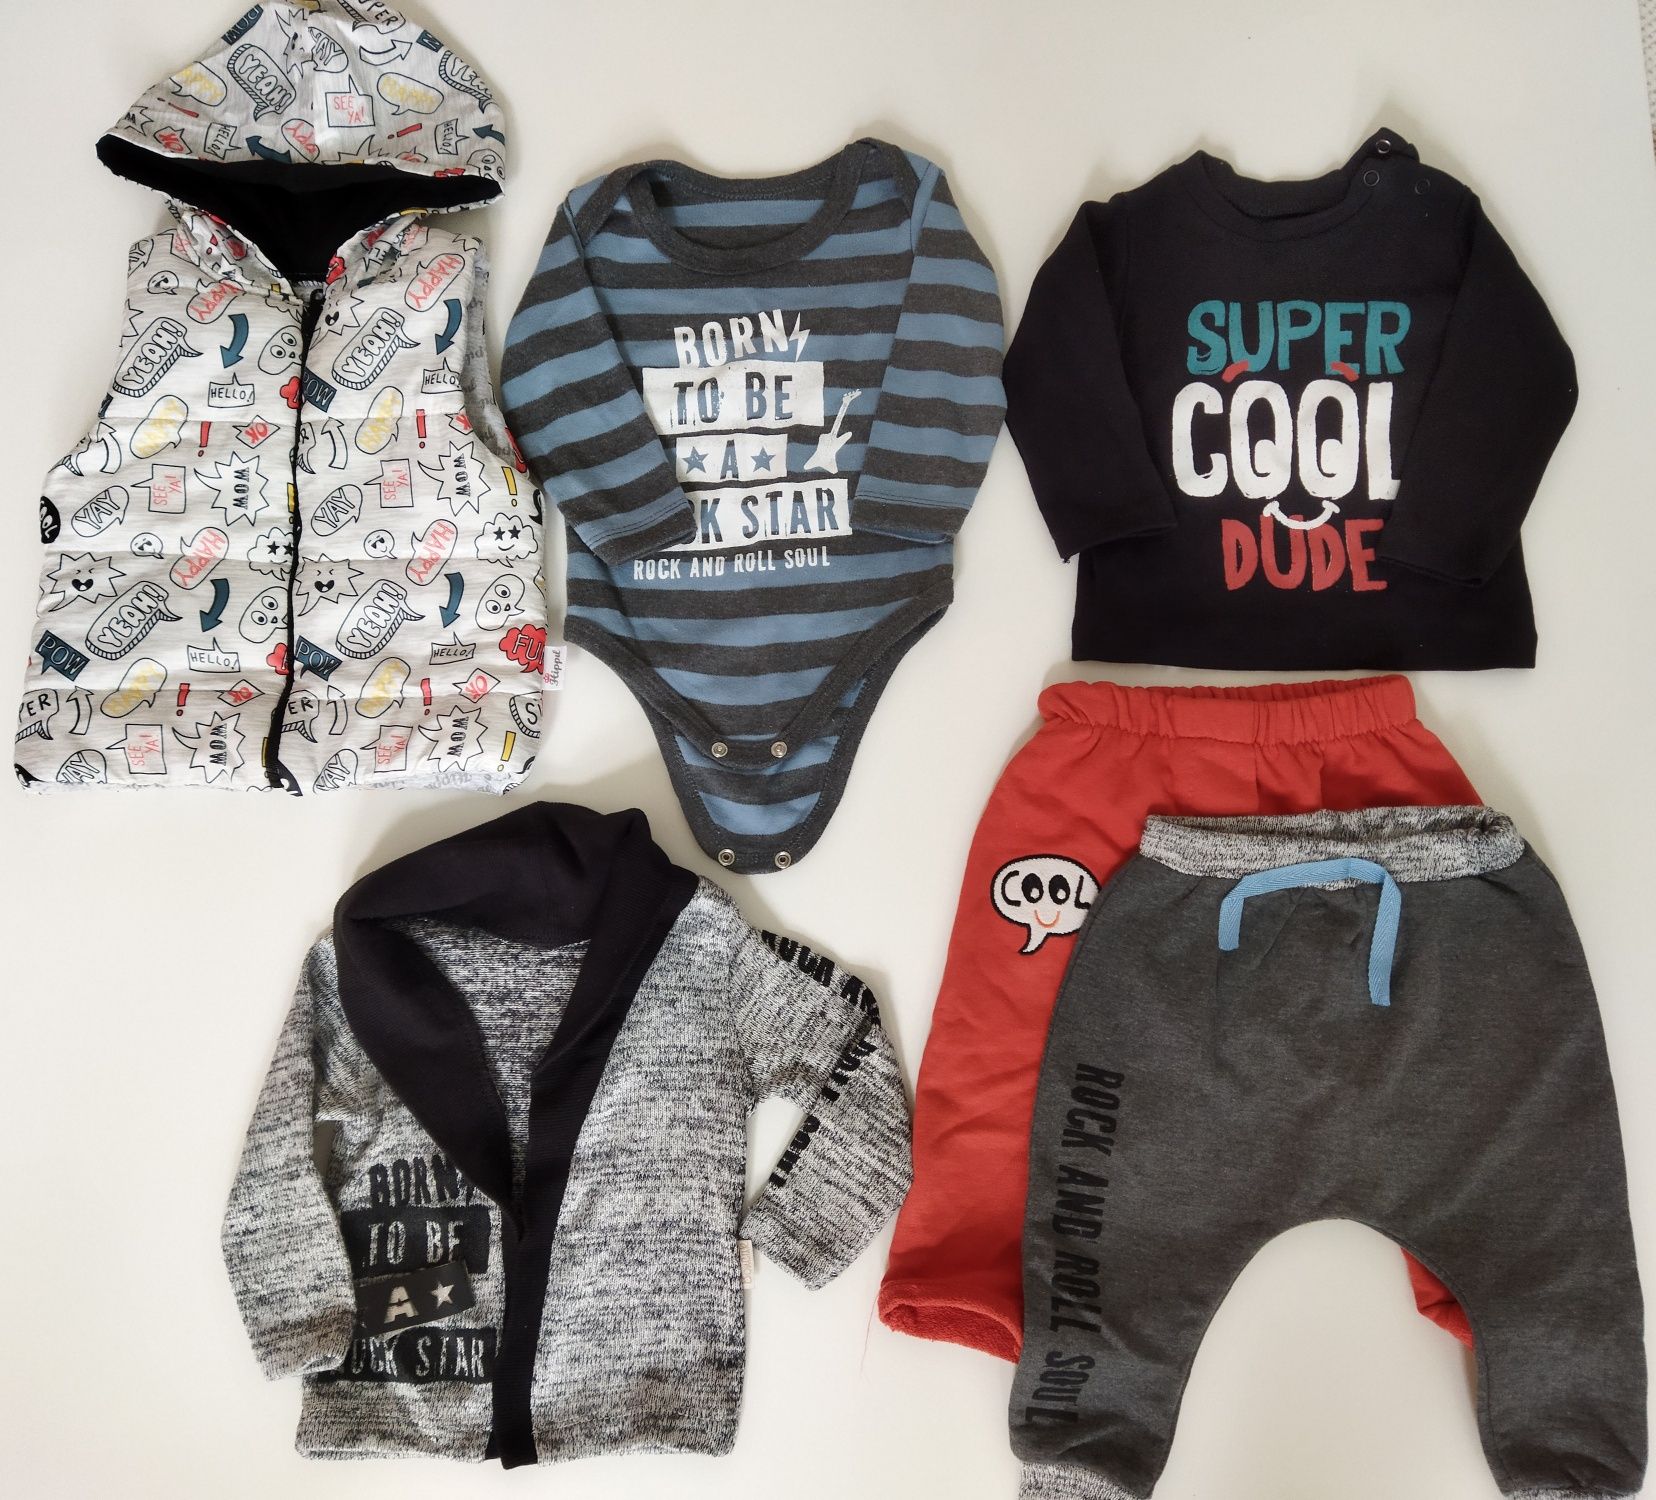 Комплект одежды на мальчика